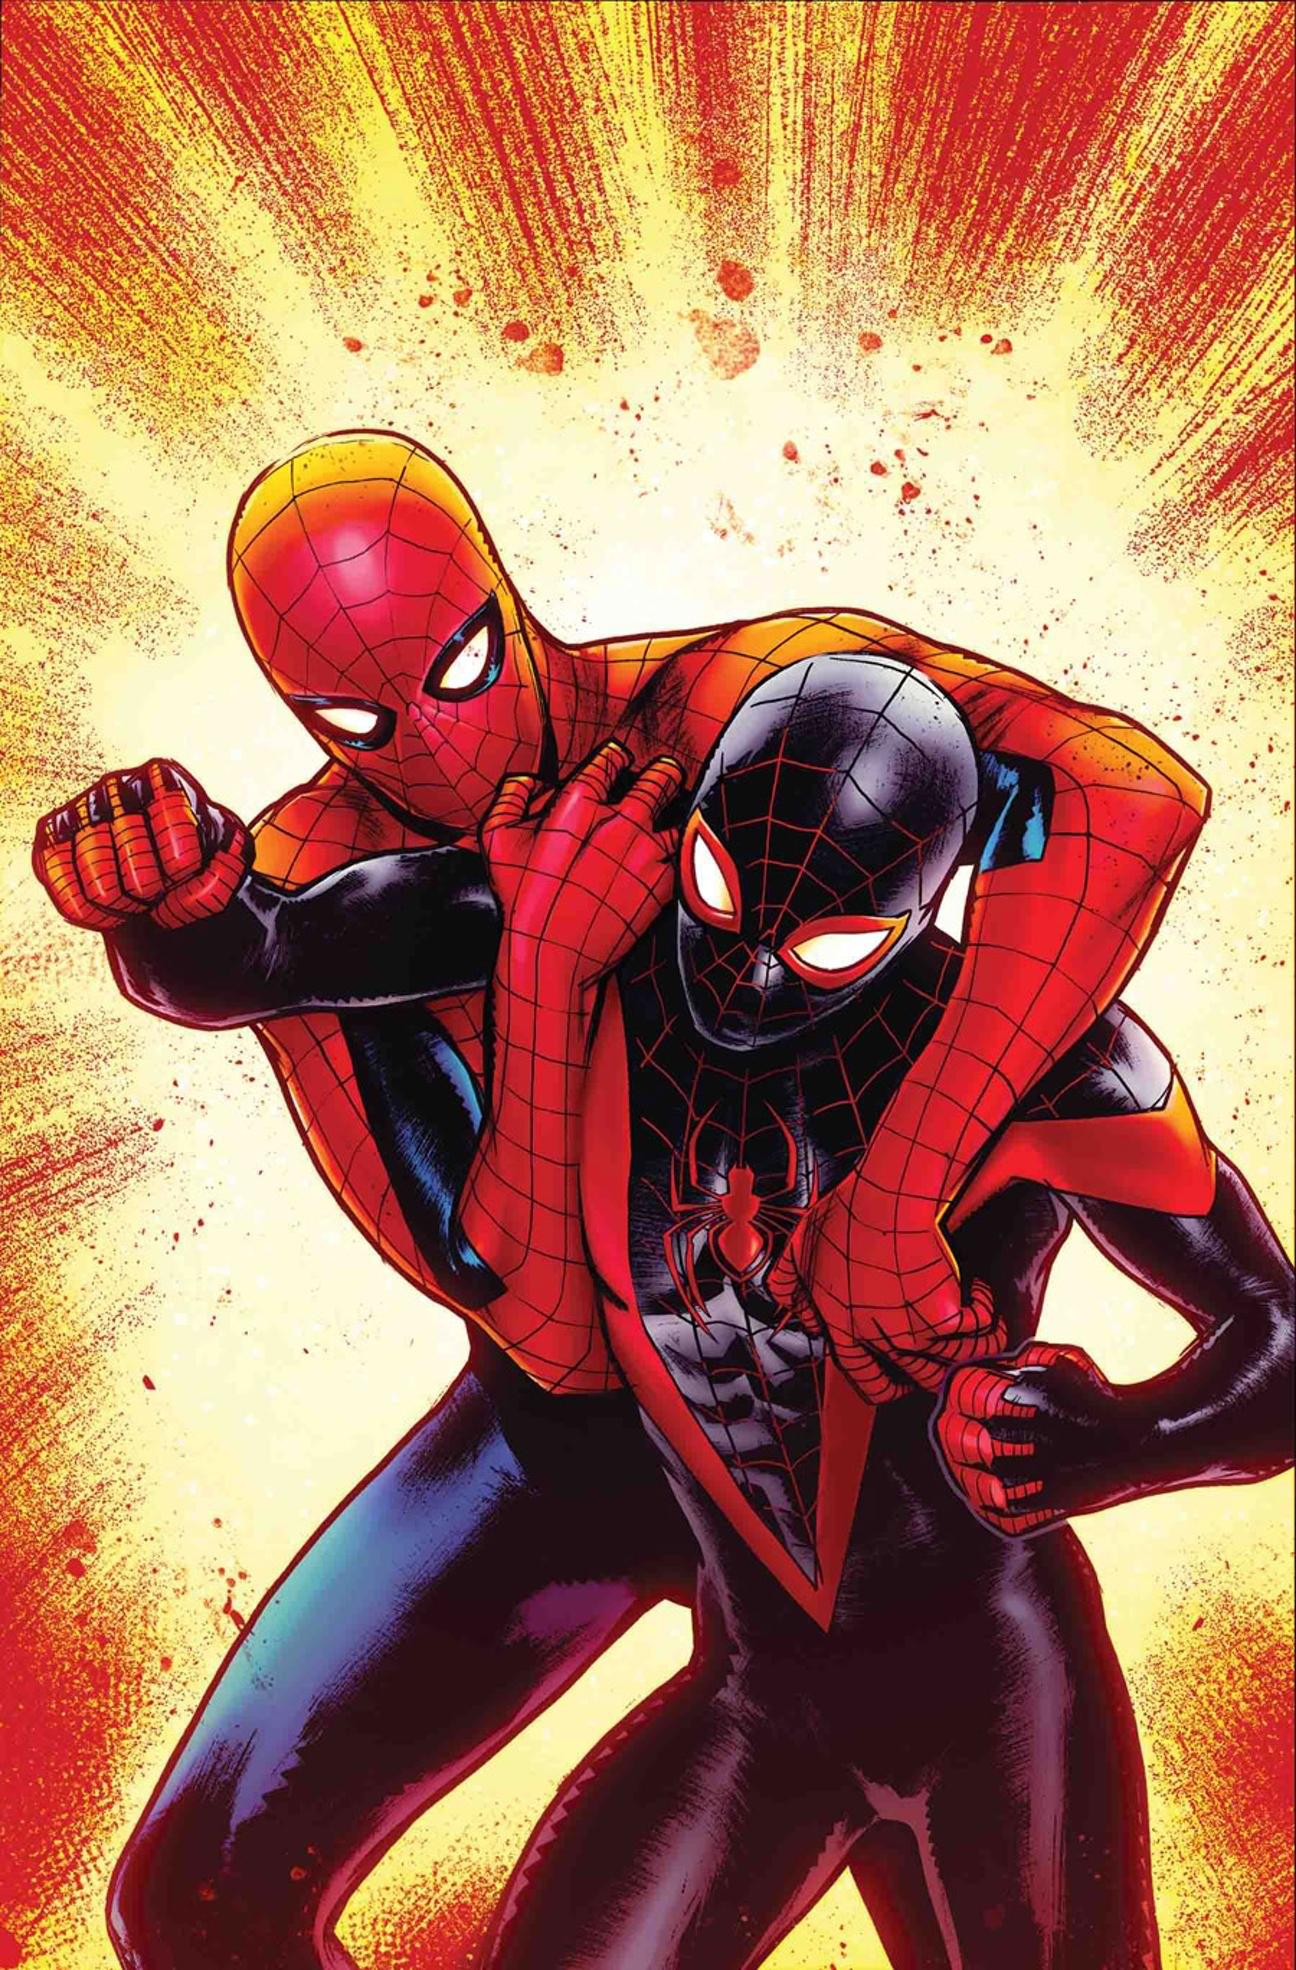 Spider-Men II Vol. 1 #4